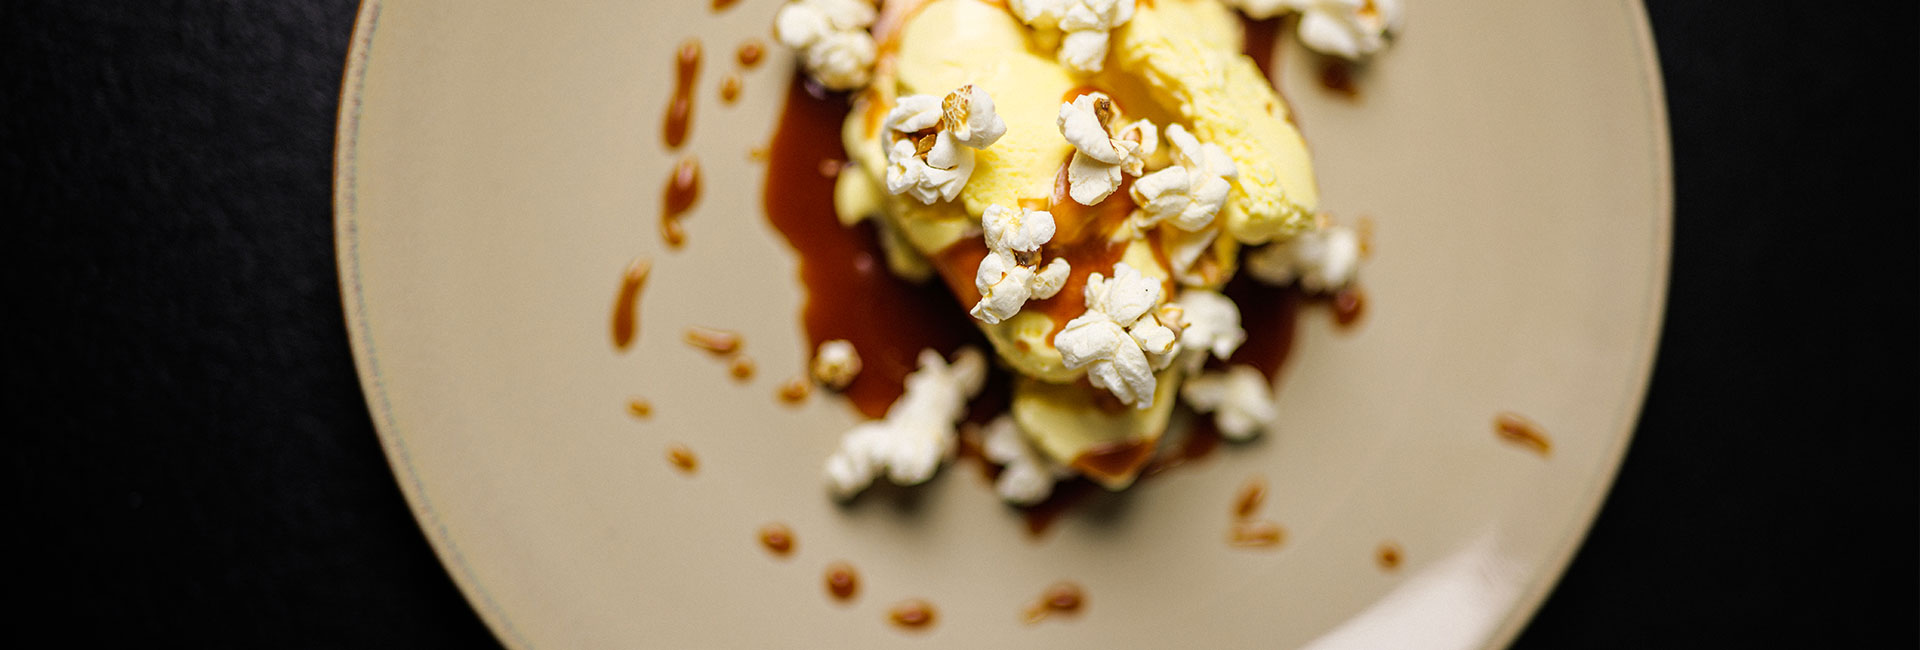 Vanilleeis mit Karamell und Popcorn - Ideen mit Eis